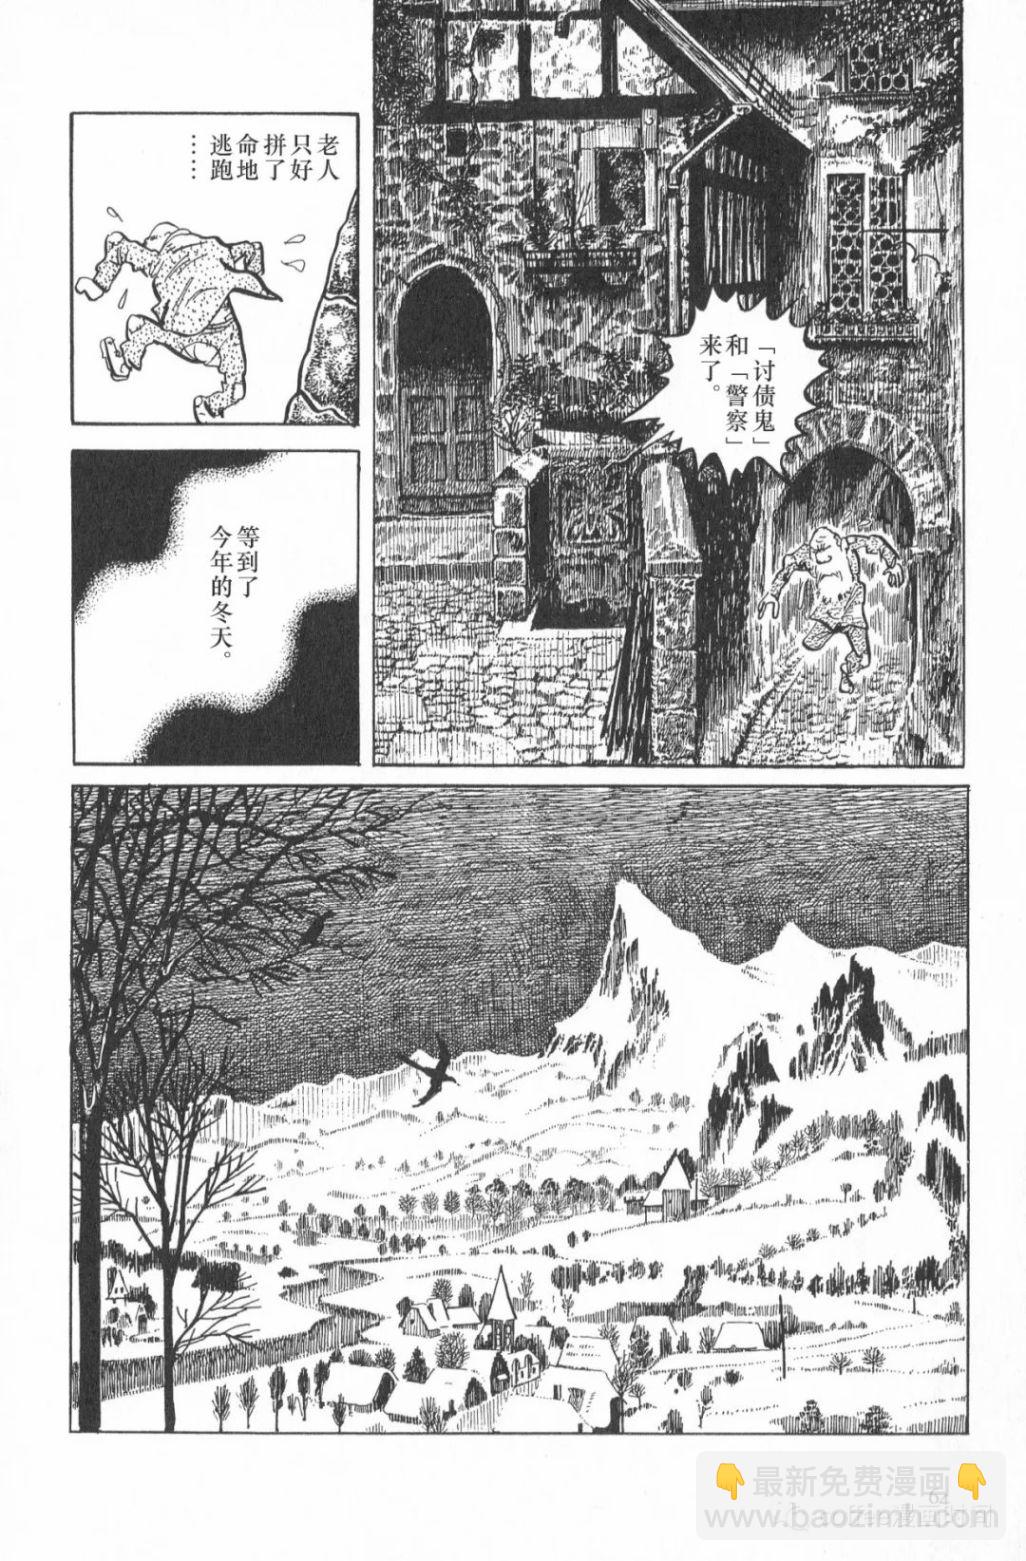 日本短篇漫畫傑作集 - 水木茂《妖花愛娜溫》 - 6